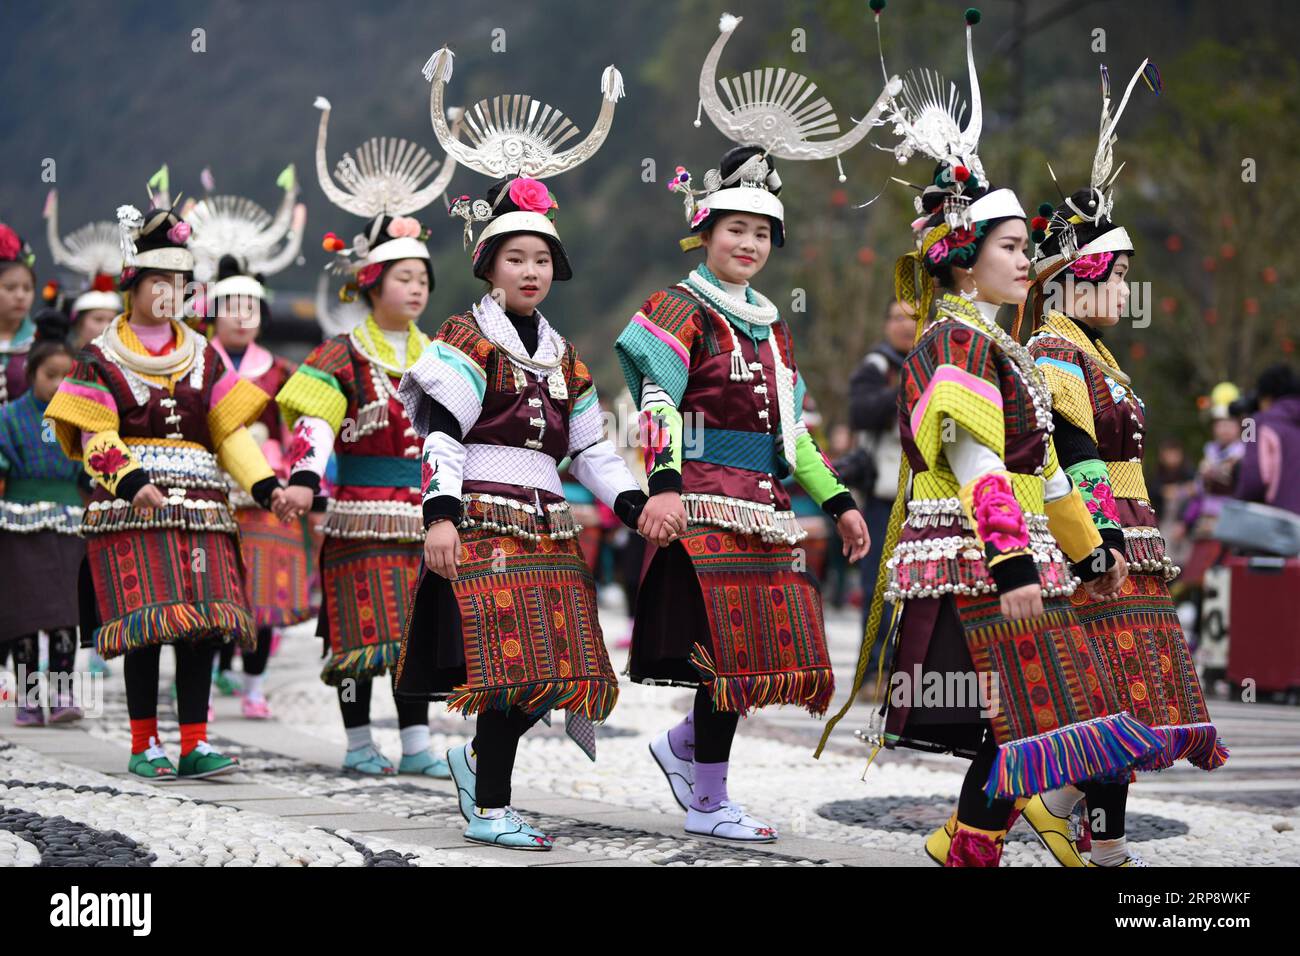 (190316) -- DANZHAI, 16 marzo 2019 (Xinhua) -- le ragazze del gruppo etnico Miao ballano al ritmo del tamburo di legno battendo, durante la celebrazione annuale del Fangu Drumming Festival, al villaggio di Qingjiang, nella contea di Danzhai, nella provincia di Guizhou della Cina sud-occidentale, 16 marzo 2019. Il Fangu Drumming Festival, un tradizionale festival locale con una storia di quasi 600 anni, offre balli con tamburi di legno, combattimento con tori, canti d'amore antifonali e altre forme d'arte popolare tradizionali. (Xinhua/Yang Wenbin) CHINA-GUIZHOU-ETNICO MIAO-FANGU FESTIVAL-DUMMING CELEBRATION(CN) PUBLICATIONxNOTxINxCHN Foto Stock